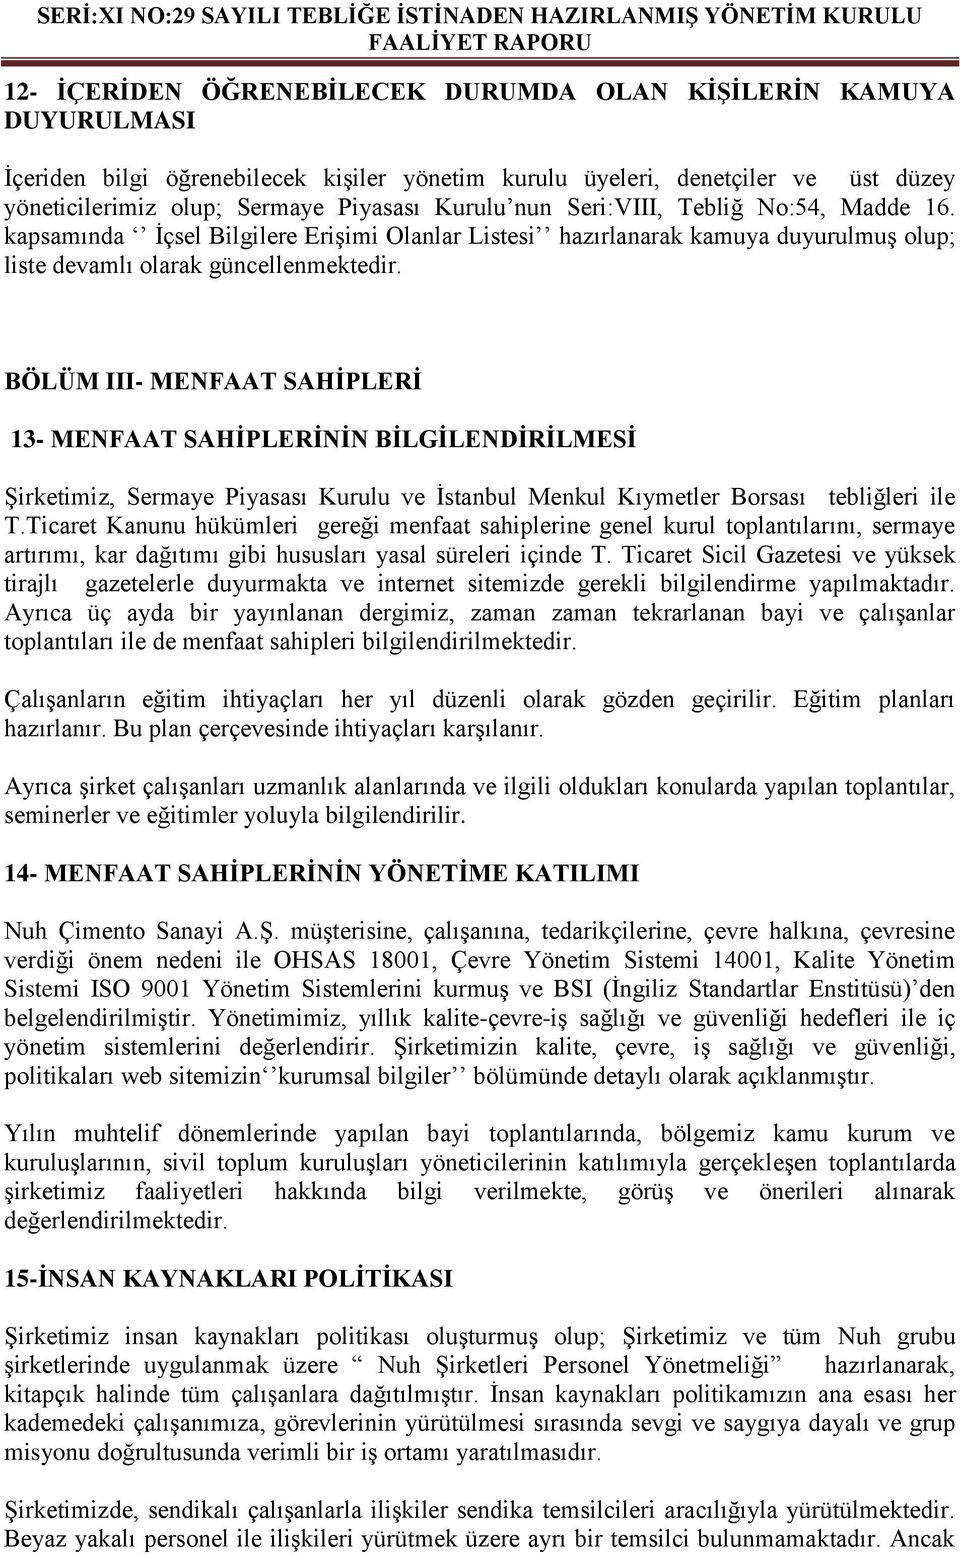 BÖLÜM III- MENFAAT SAHĠPLERĠ 13- MENFAAT SAHĠPLERĠNĠN BĠLGĠLENDĠRĠLMESĠ Şirketimiz, Sermaye Piyasası Kurulu ve İstanbul Menkul Kıymetler Borsası tebliğleri ile T.